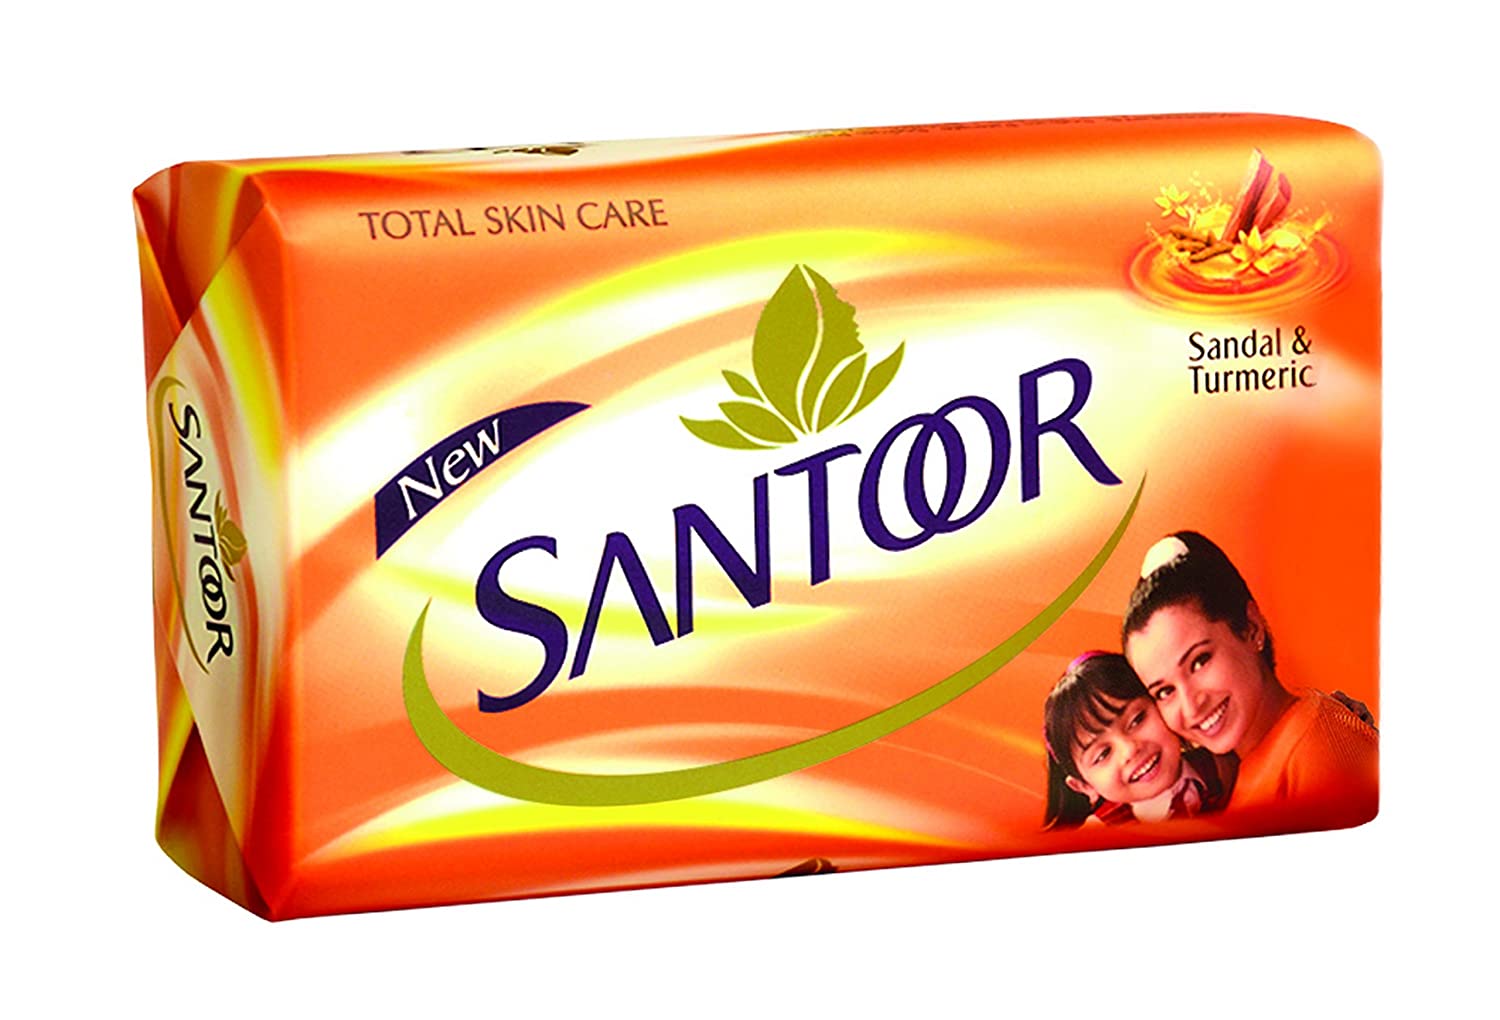 Santoor Body Soap